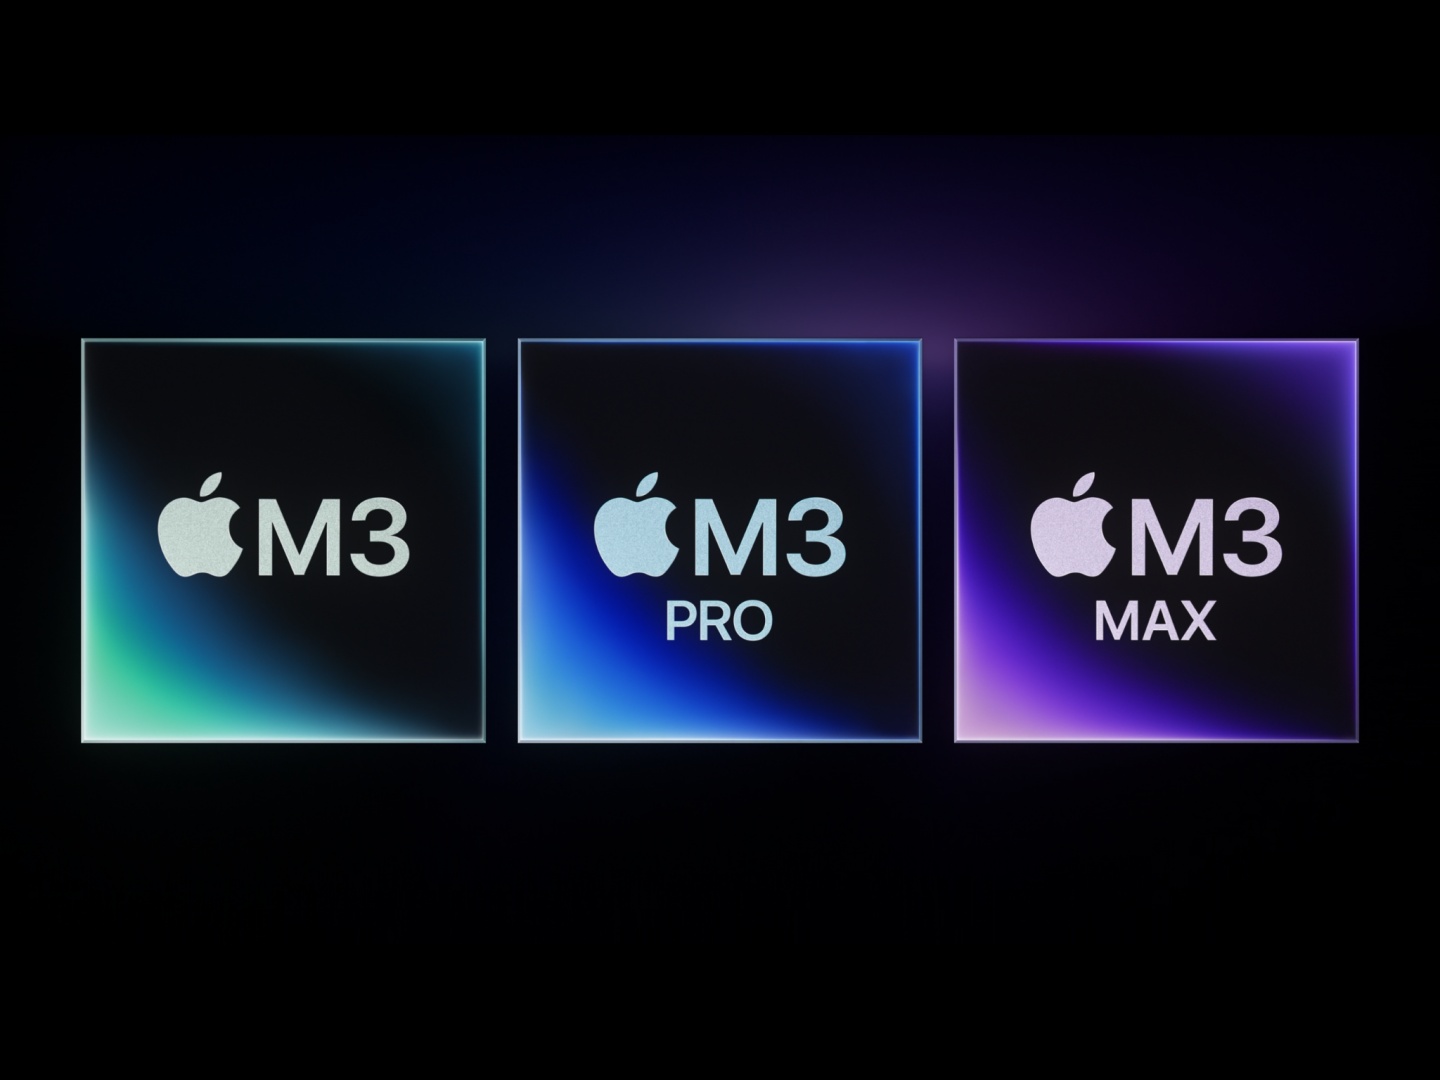 搭載 M3 系列晶片的 MacBook Pro 在臺灣開賣！售價新臺幣 54,900 元起，訂購最快 12/20 可到貨